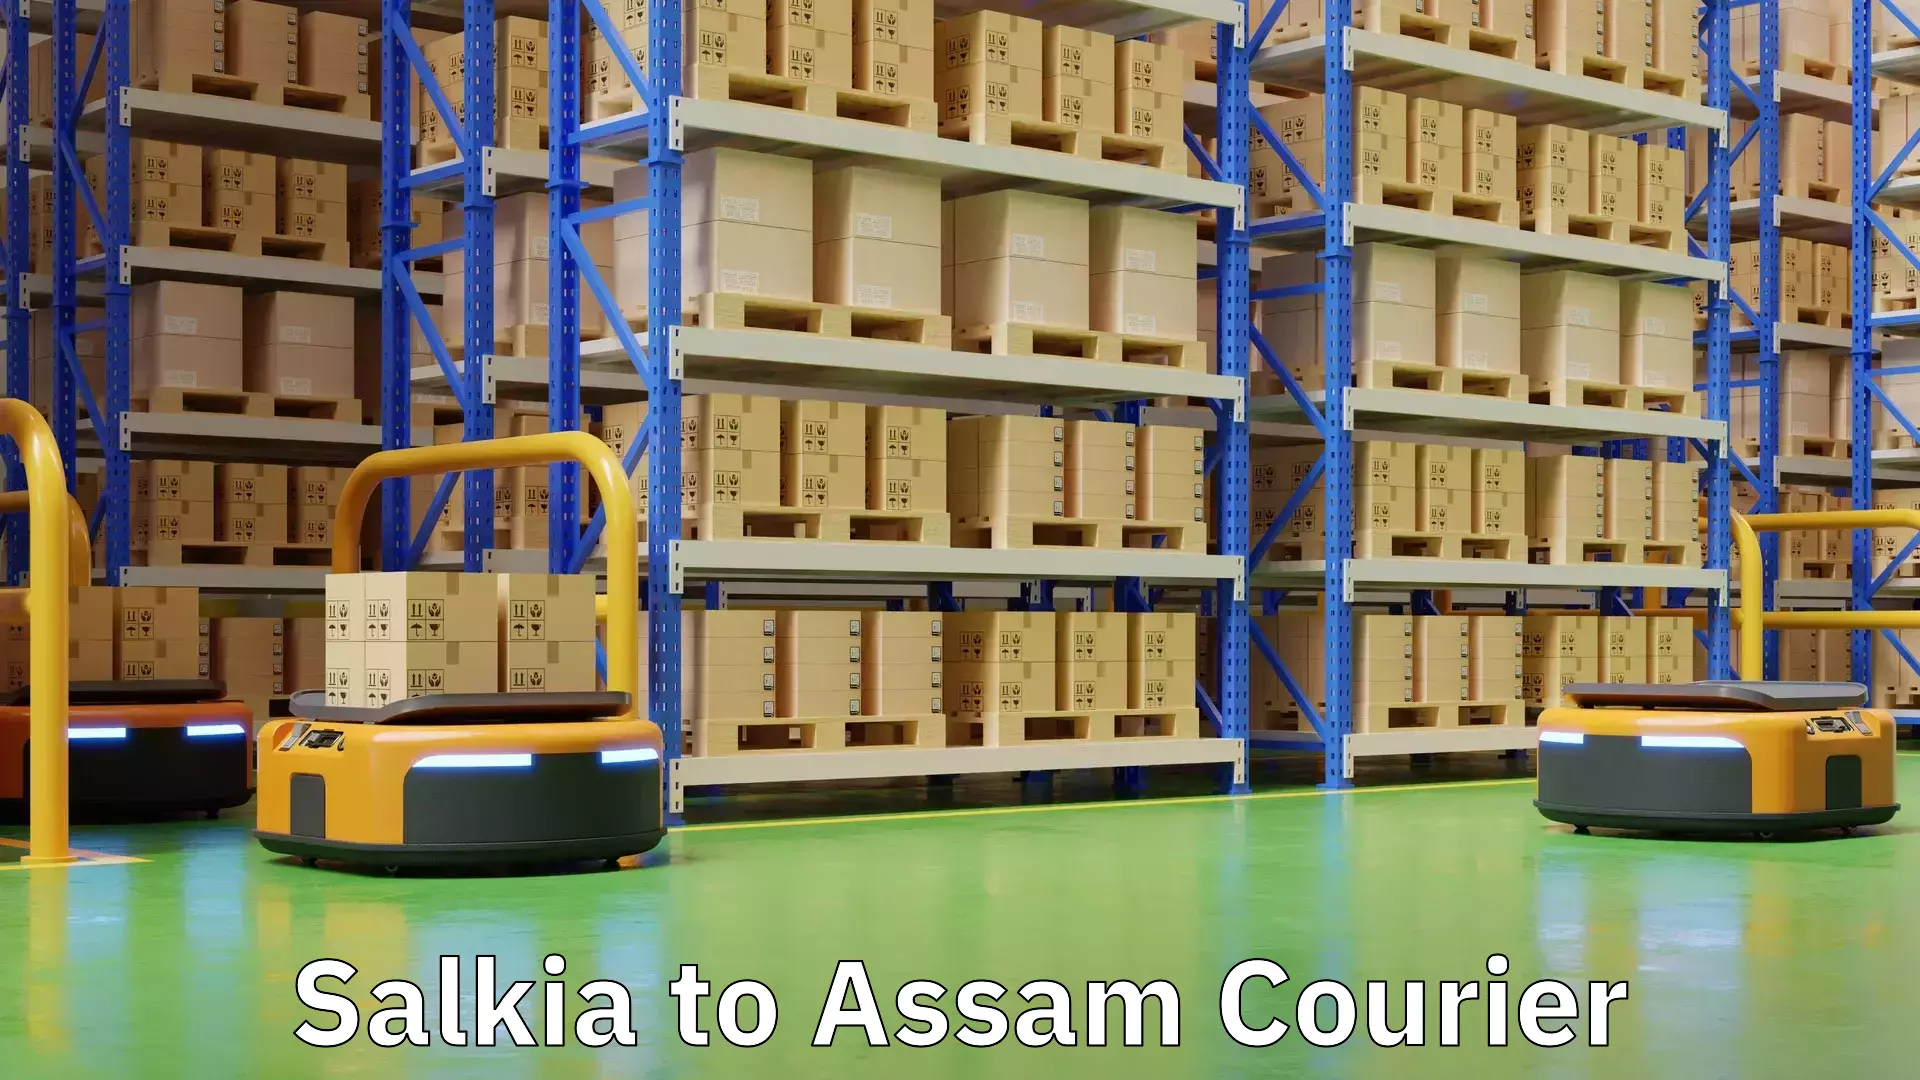 Customer-centric shipping Salkia to Assam